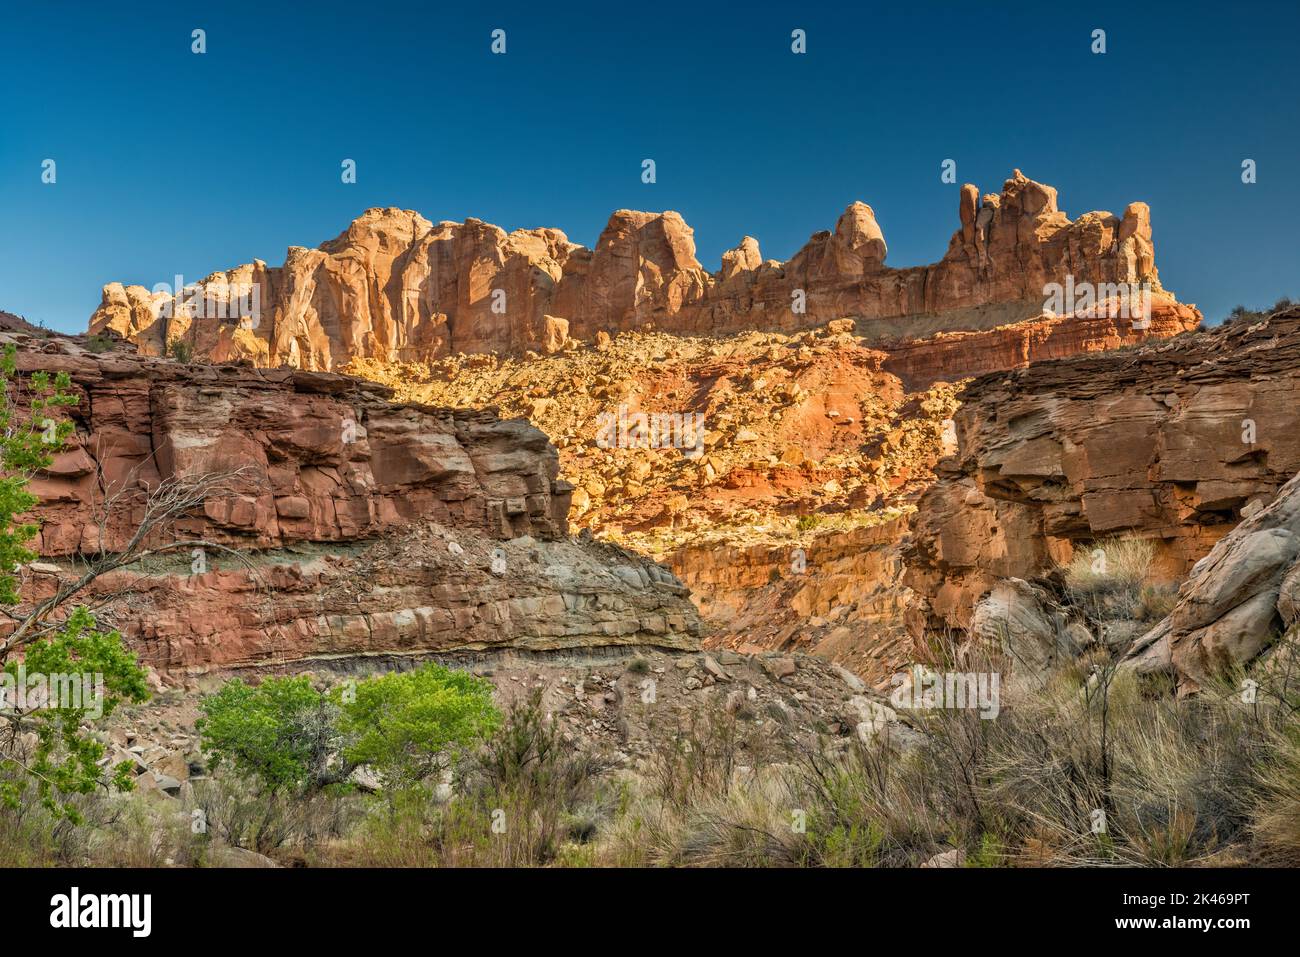 Formaciones rocosas de arenisca de Coconino sin nombre sobre Chute Canyon, Little Ocean Draw Wilderness, San Rafael Reef, Utah, EE.UU Foto de stock